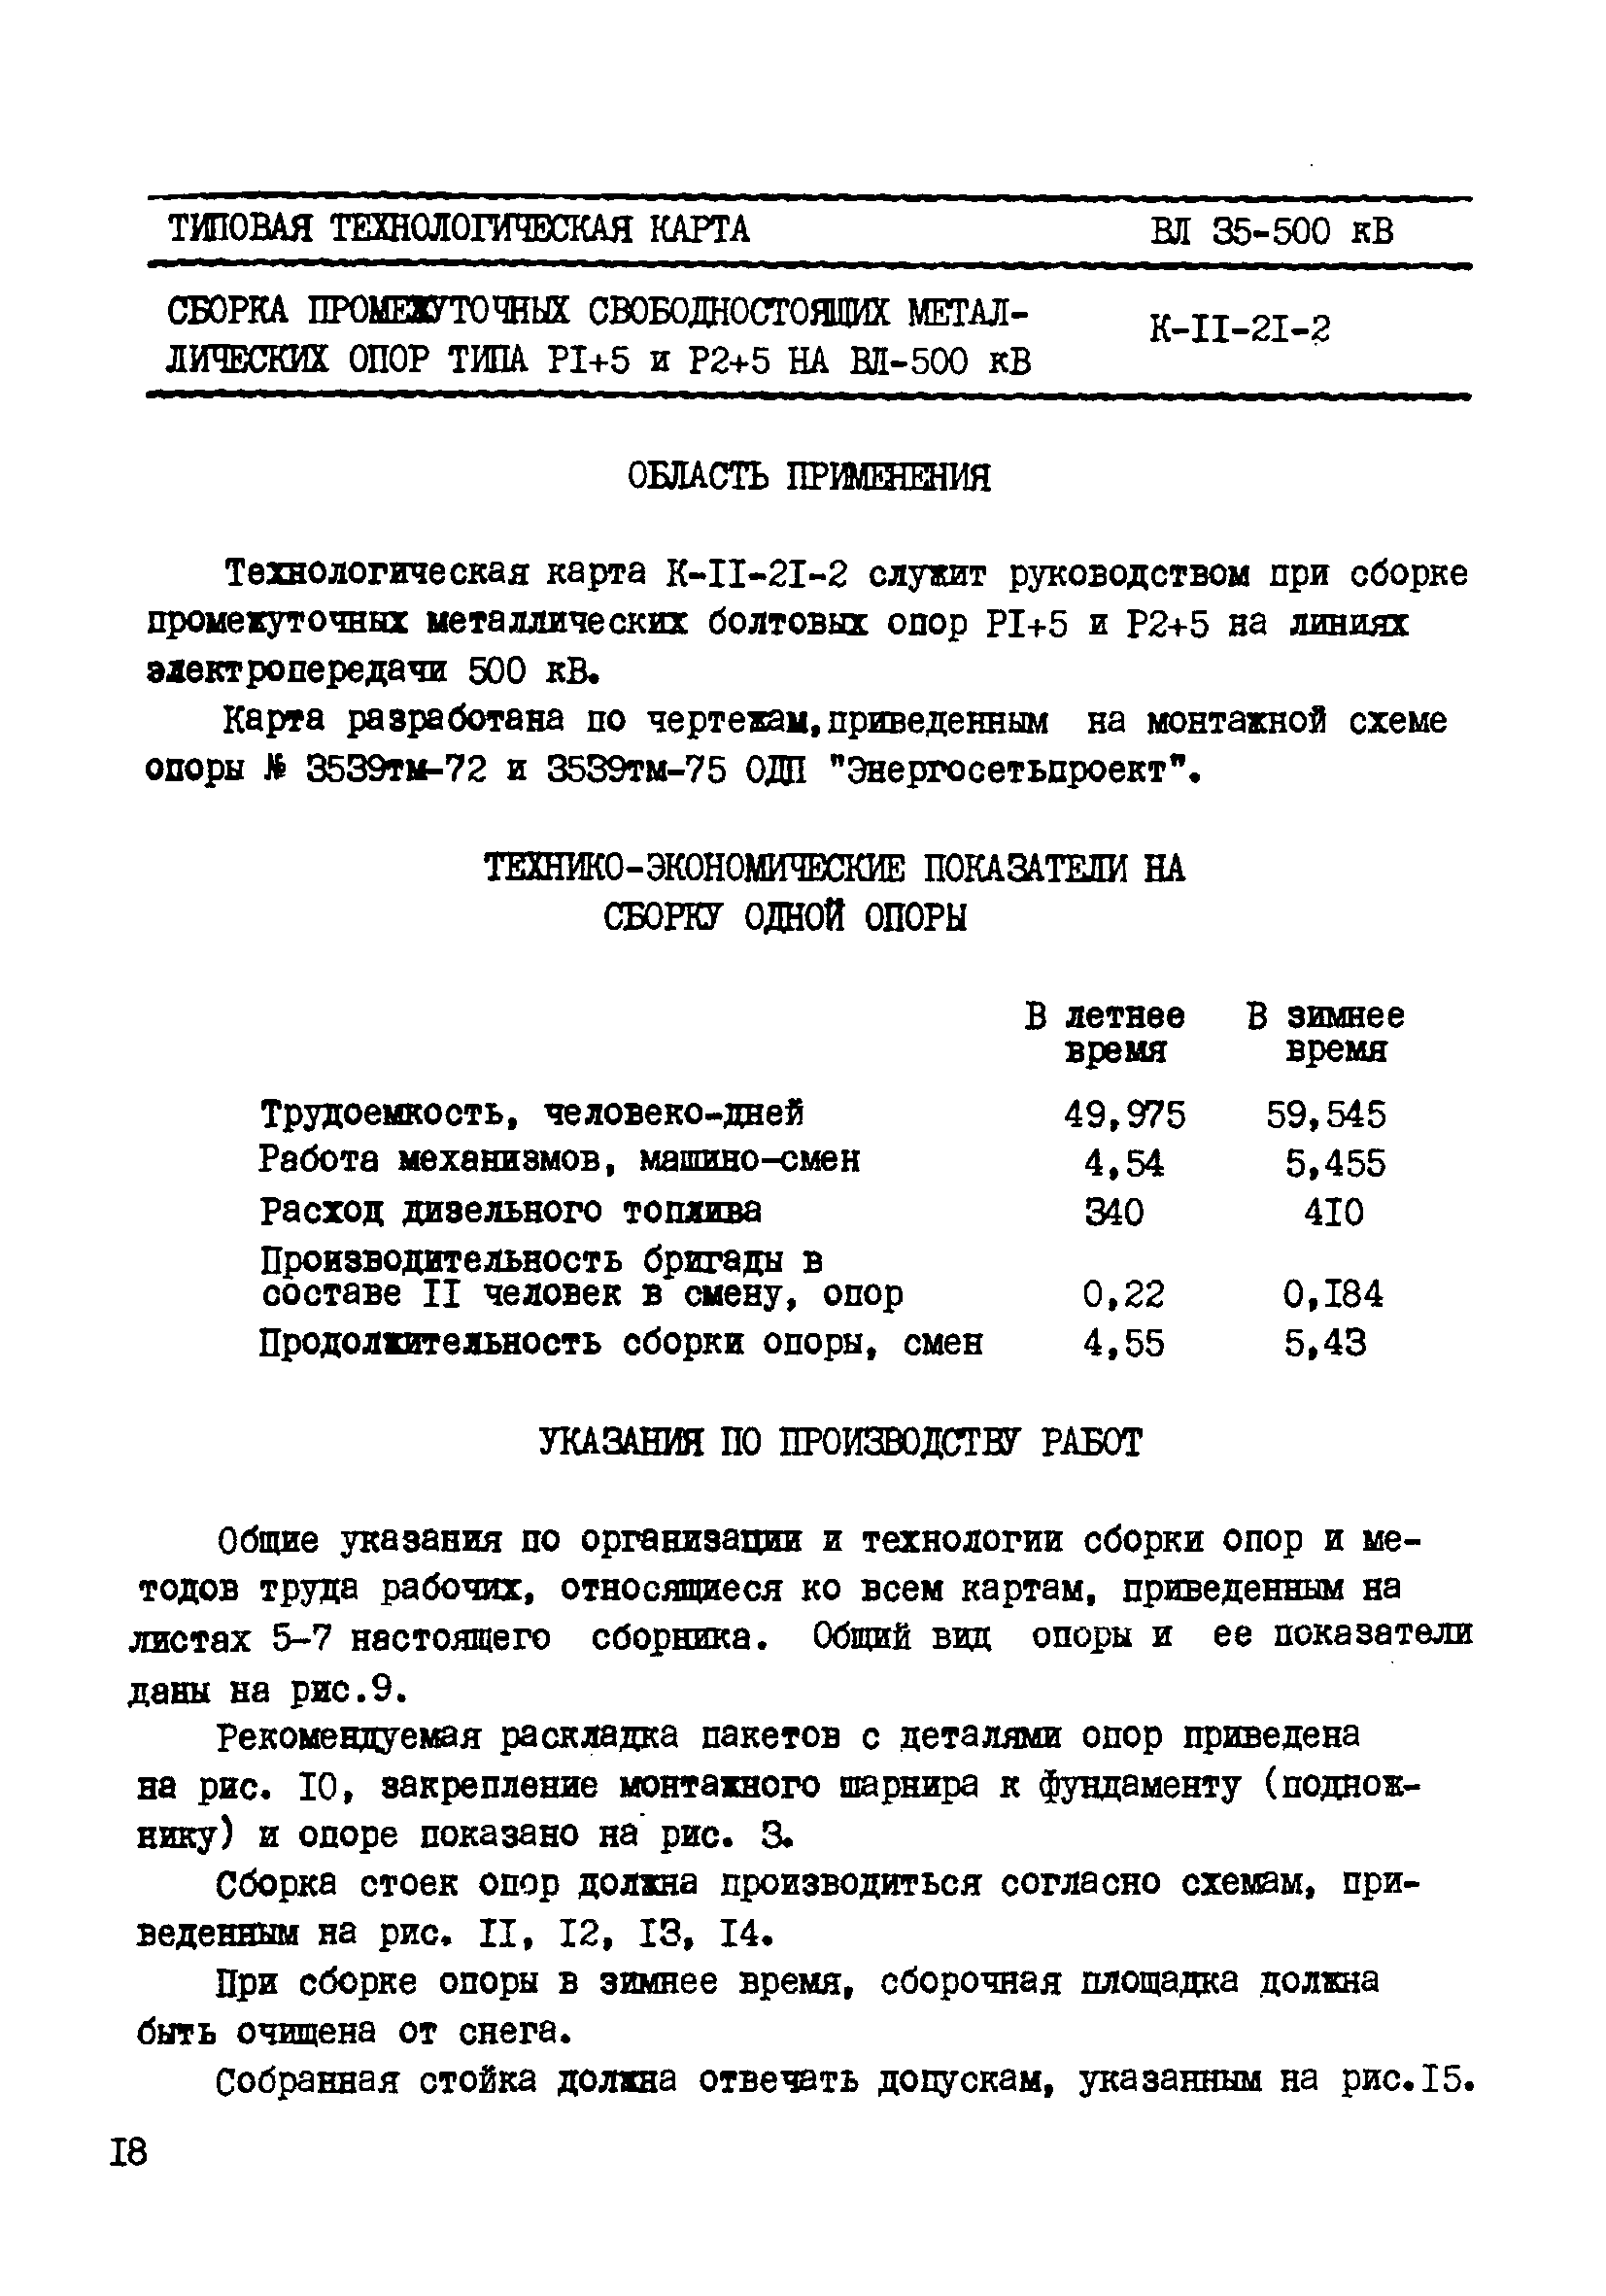 ТТК К-II-21-2